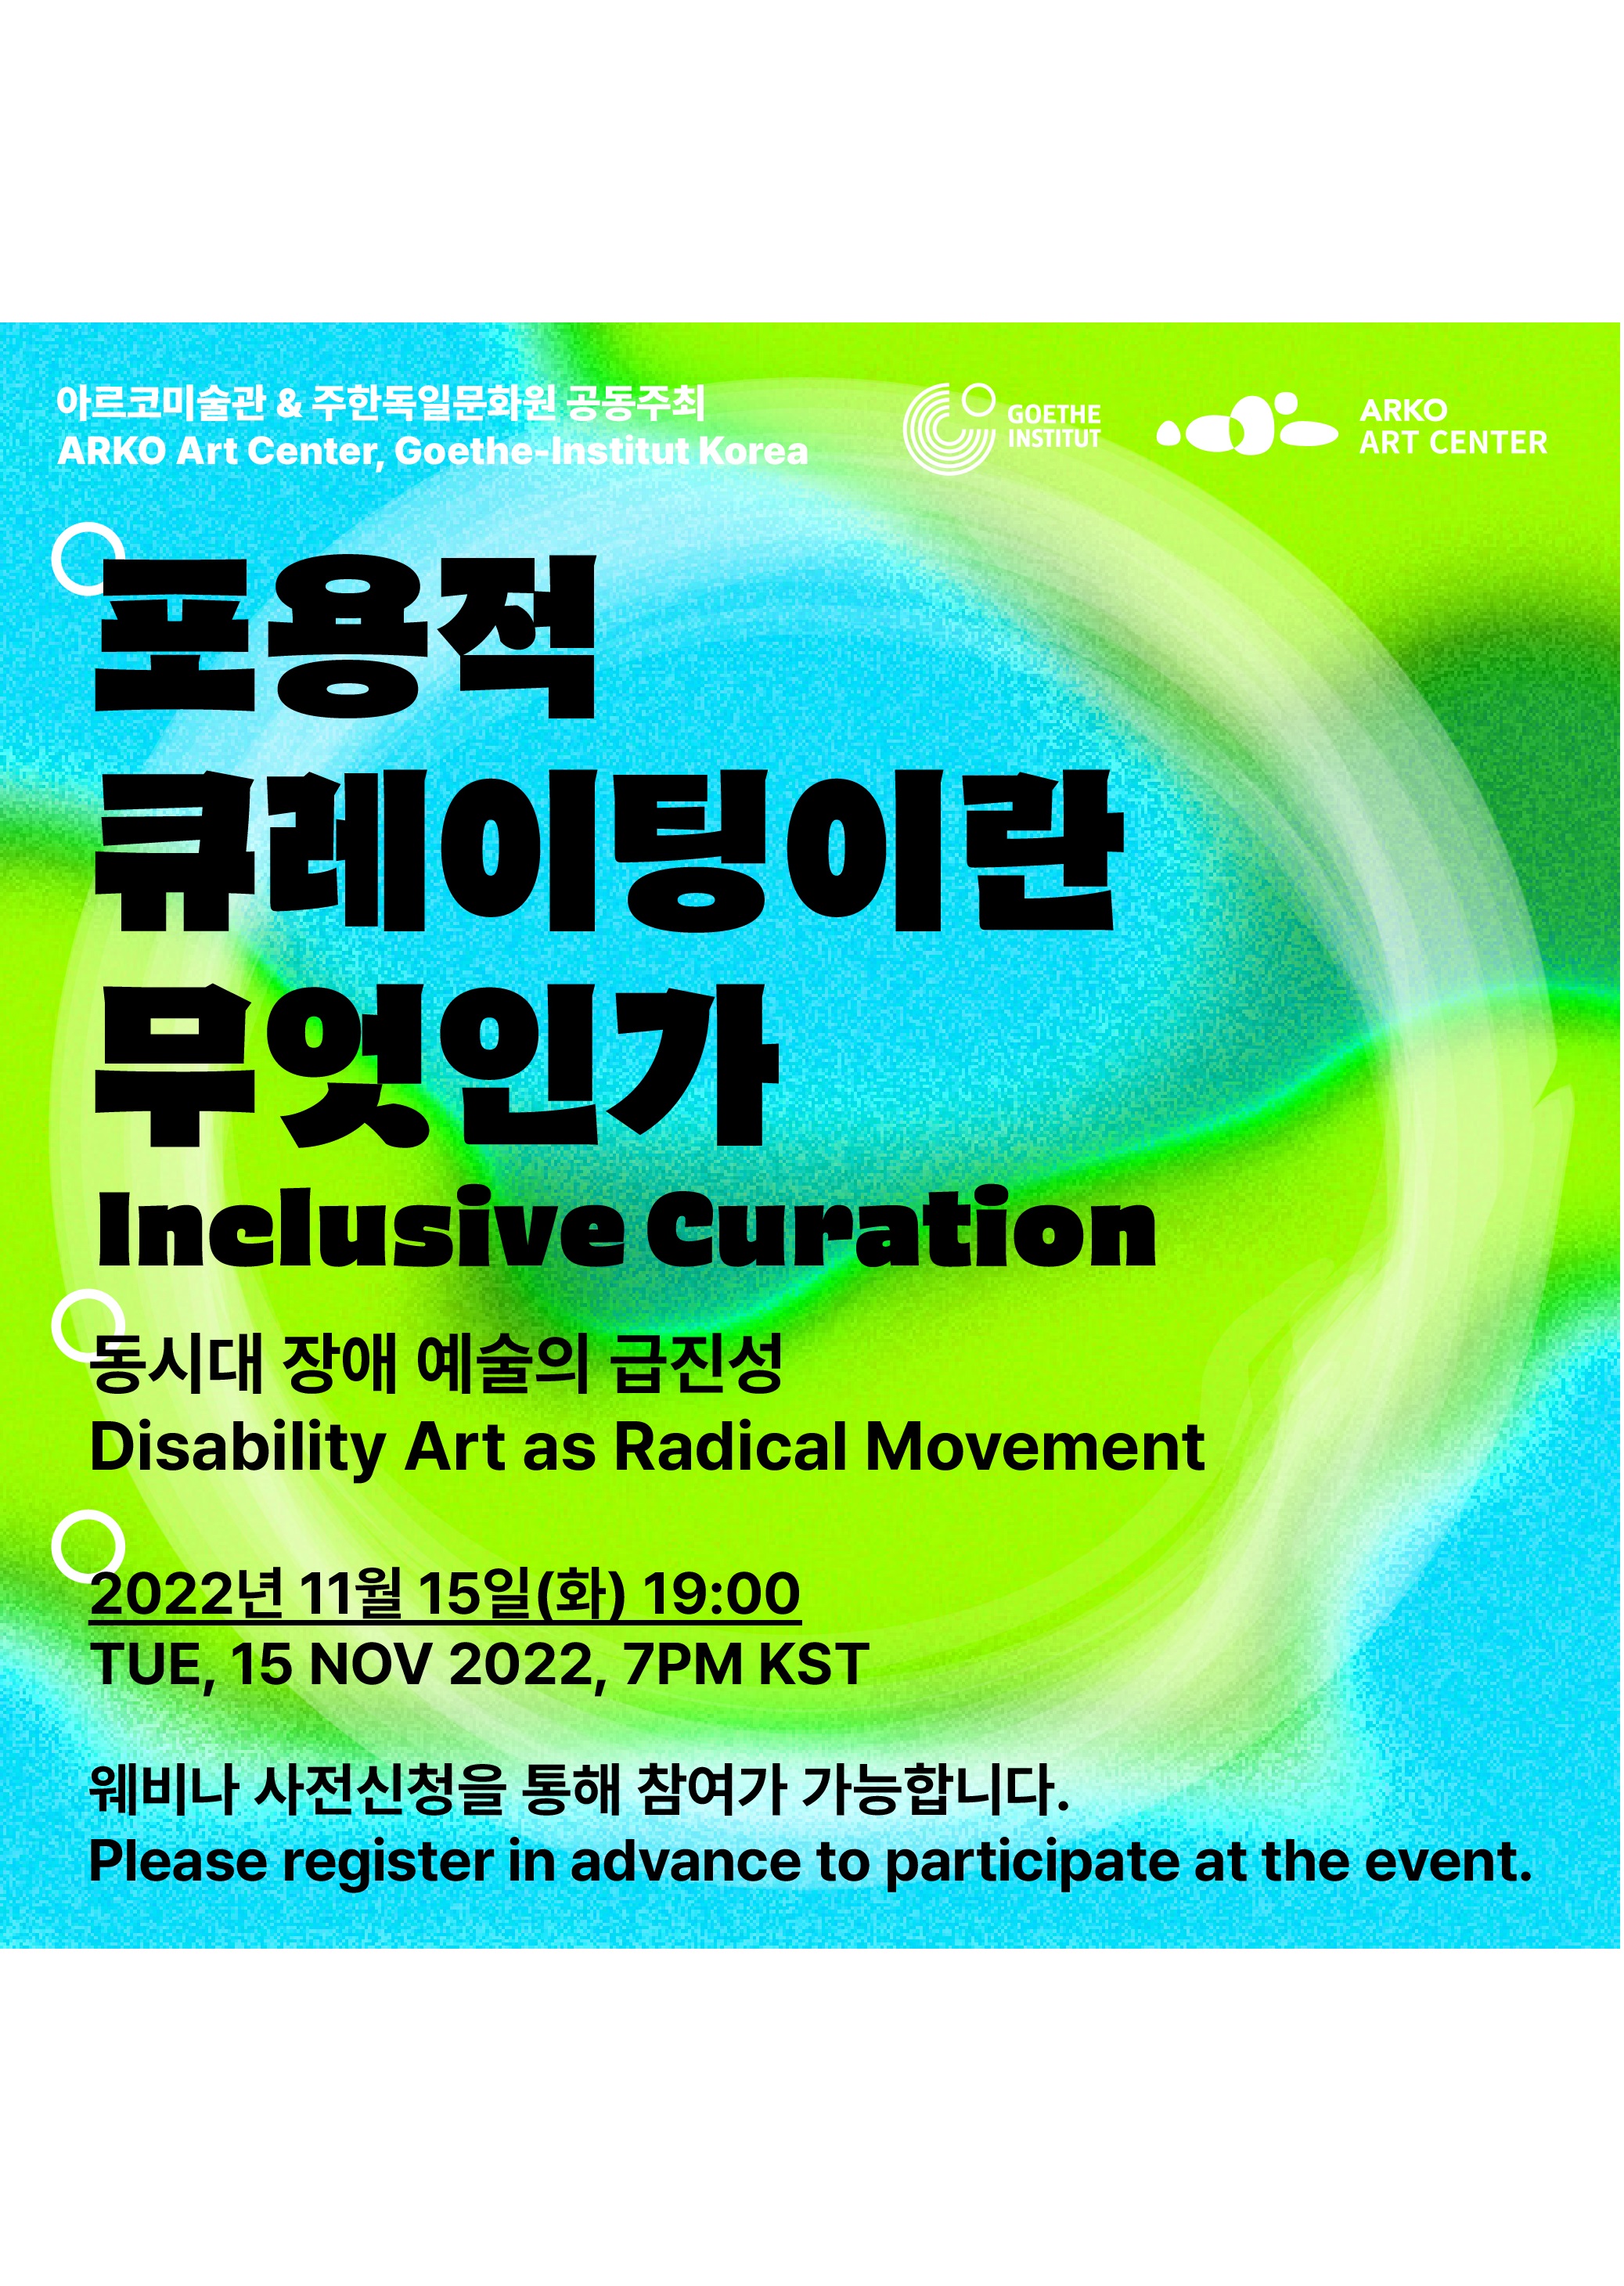 아르코미술관 & 주한독일문화원 공동주최
ARKO Art Center, Goethe-Institut Korea
포용적 큐레이팅이란 무엇인가: 동시대 장애 예술의 급진성 
Inclusive Curation : Disability Art as Radical Movement

2022년 11월 15일 (화) 19:00
TUE, 15 NOV 2022, 7PM KST

웨비나 사전신청을 통해 참여가 가능합니다.
Please register in advance to participate at the event.